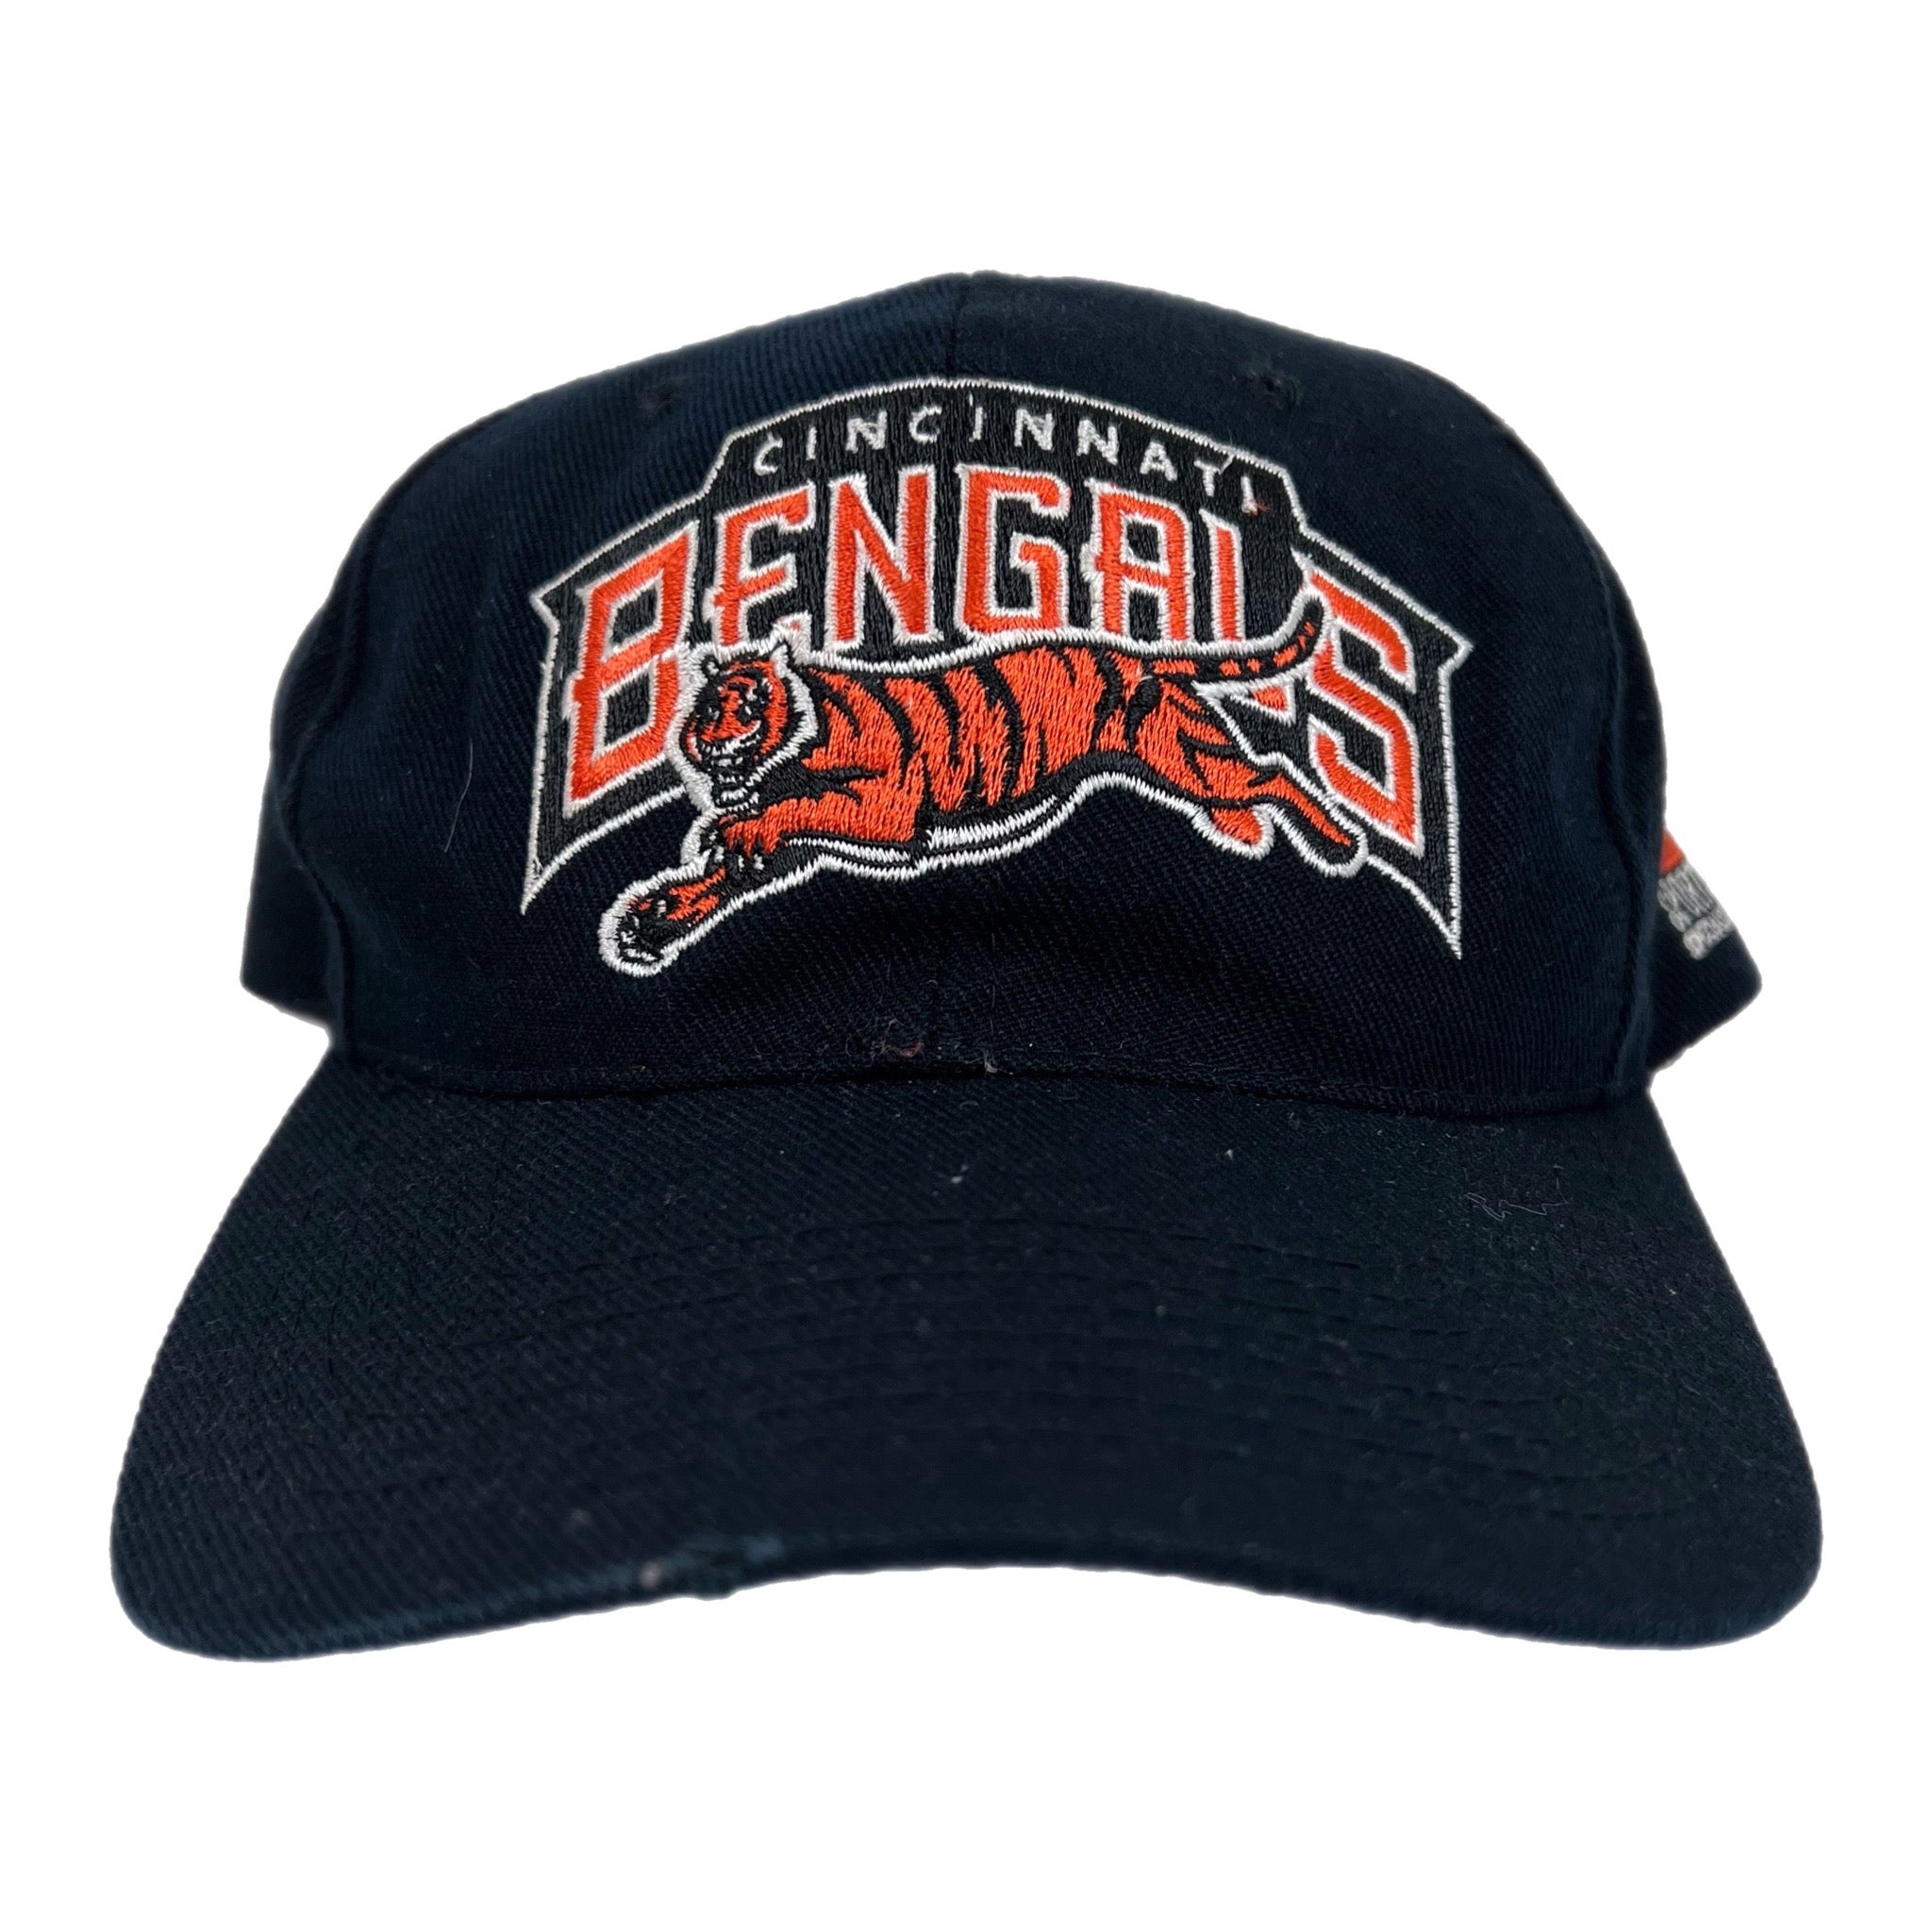 Vintage Cincinnati Bengals Sports Specialties Hat